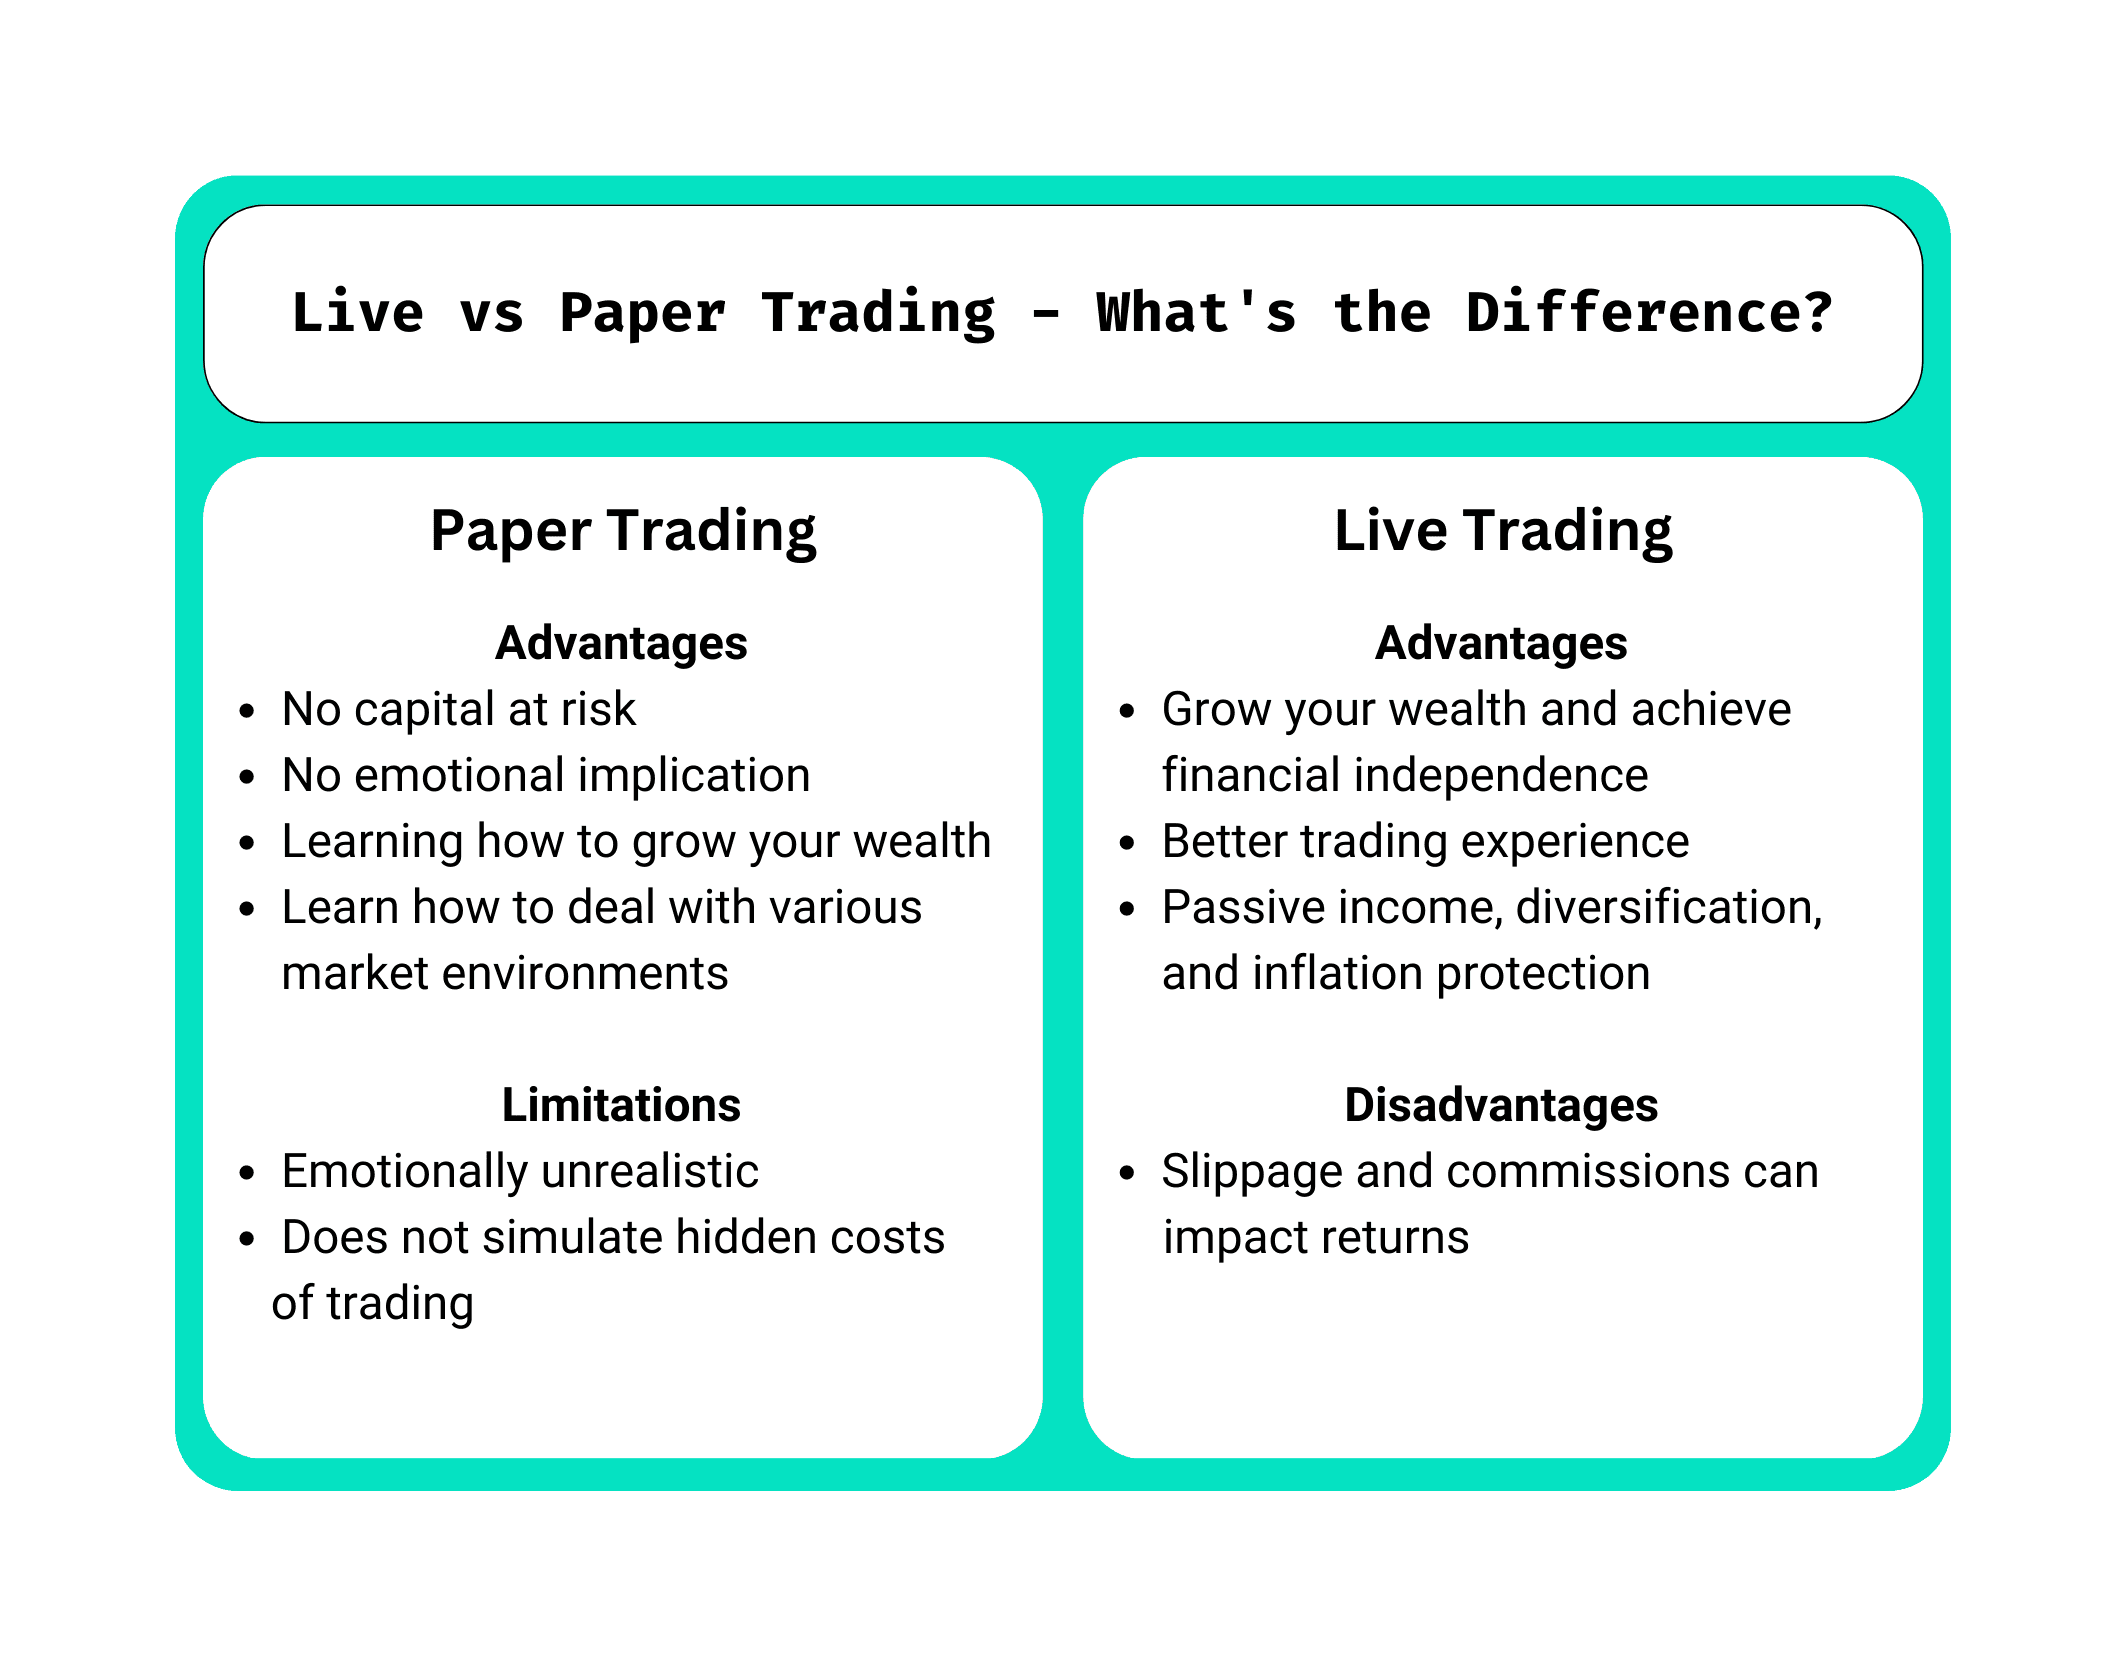 paper trading versus live trading summarised